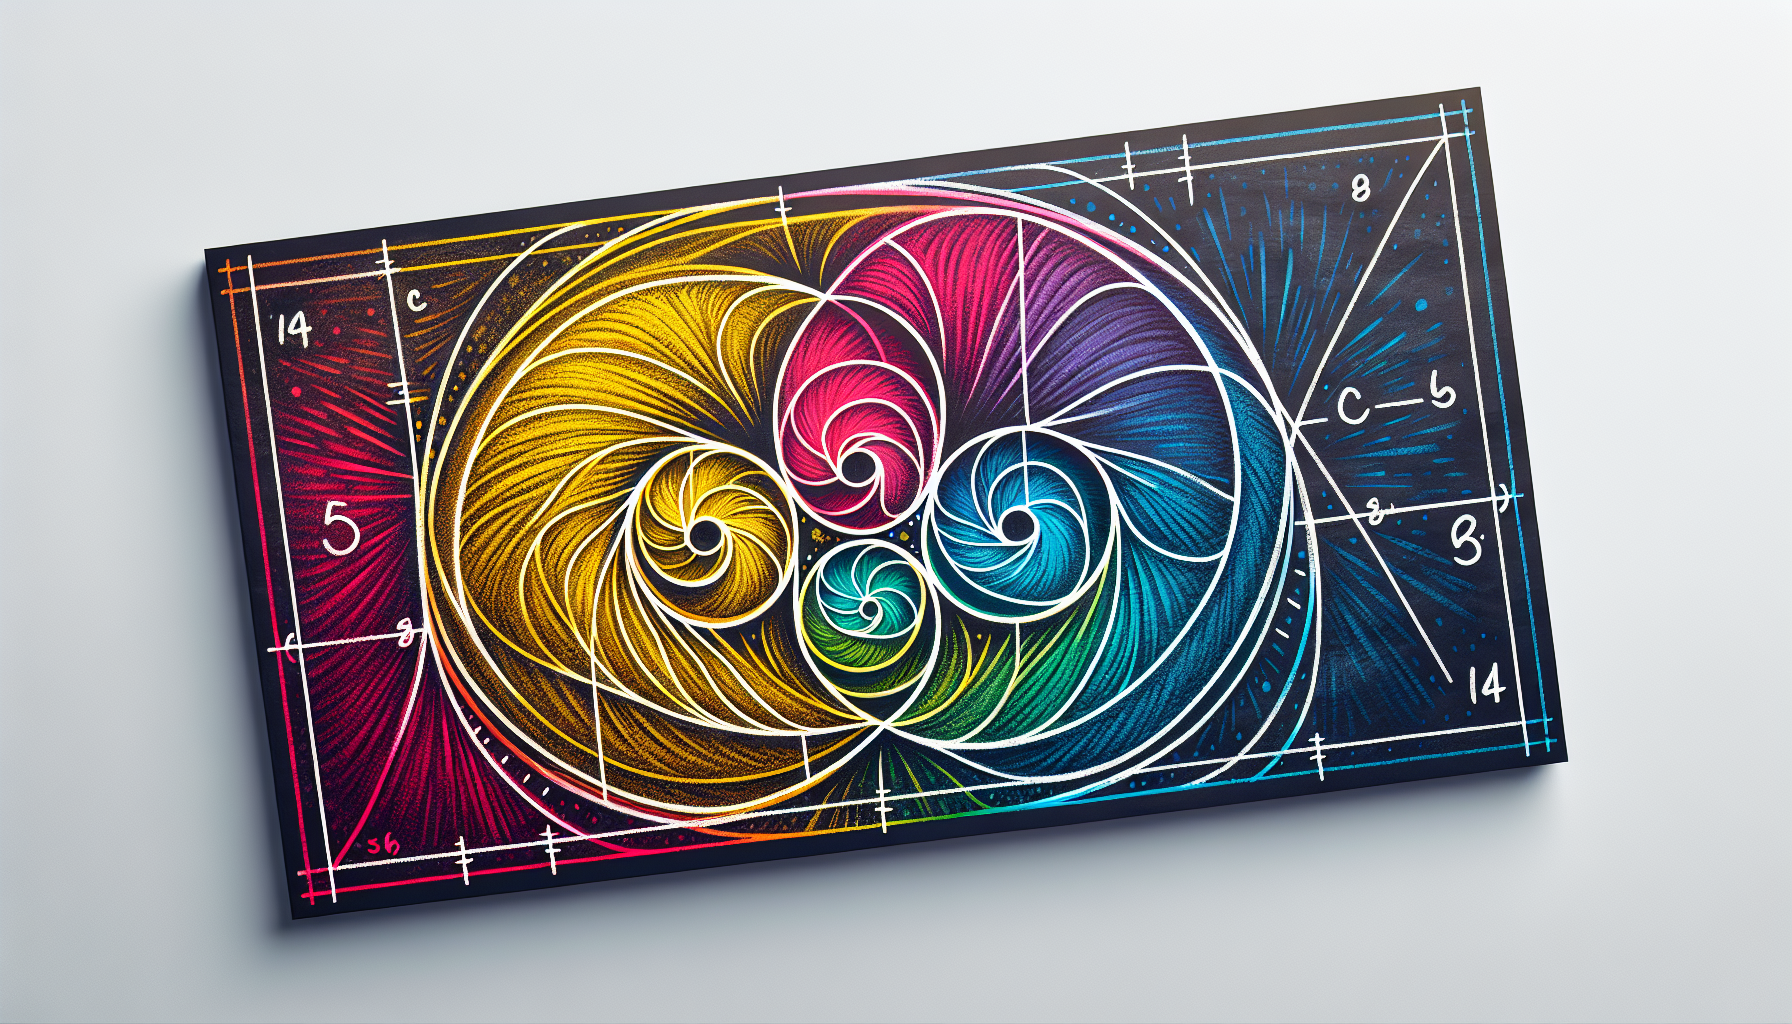 A Fibonacci spiral drawn on a chalkboard